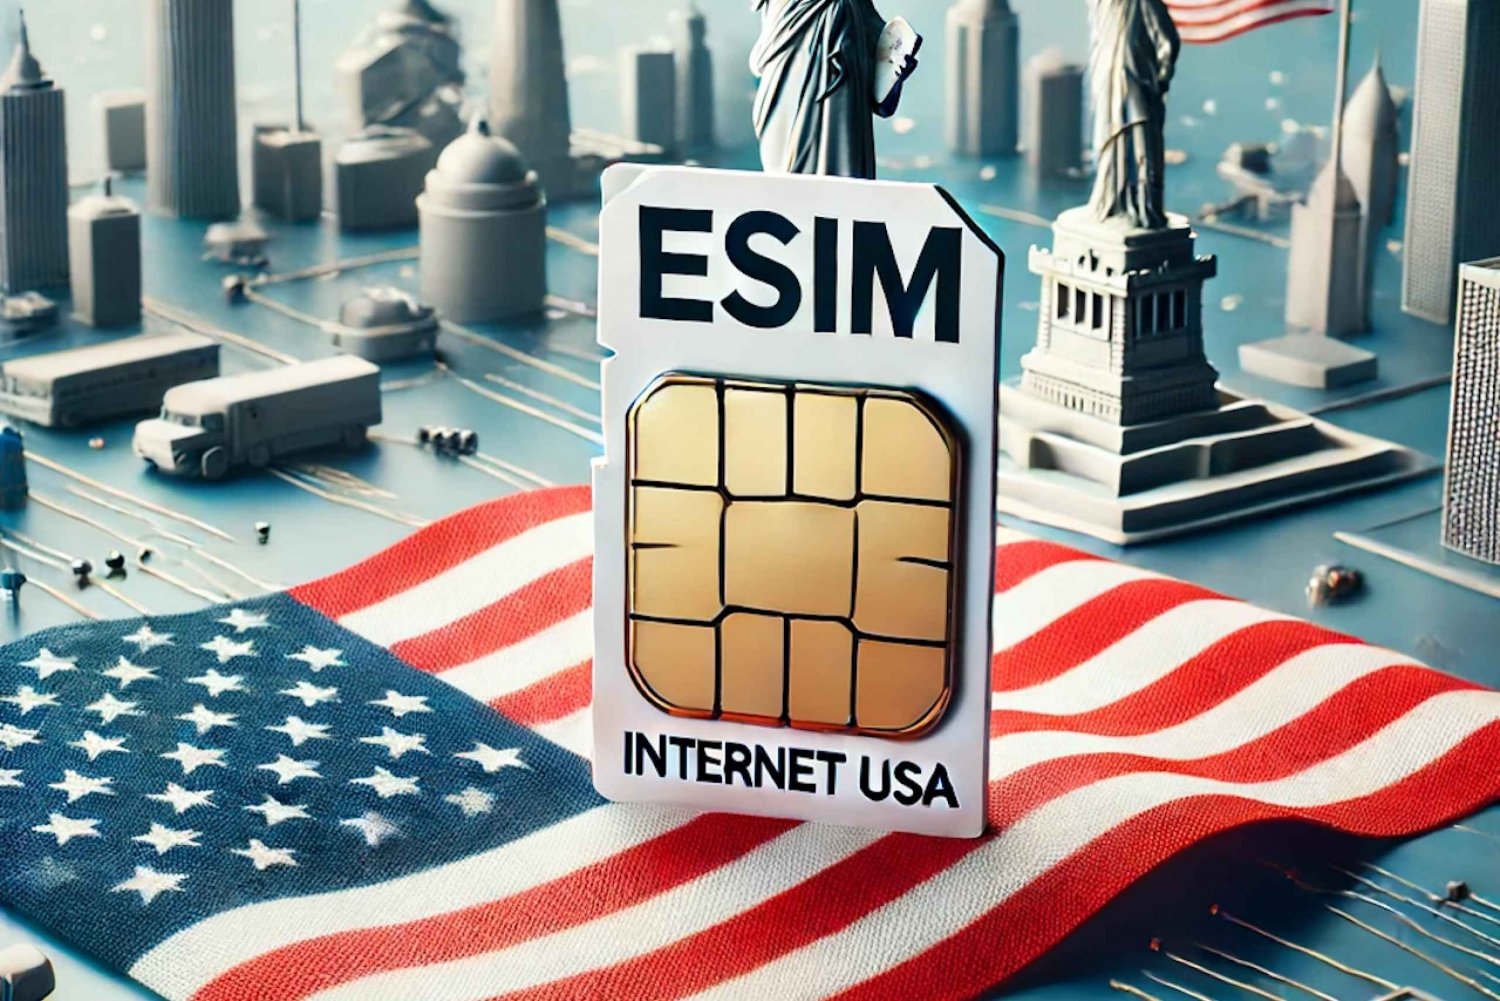 Esim USA : eSim Las Vegas with 4G/5G Data Up to 20GB